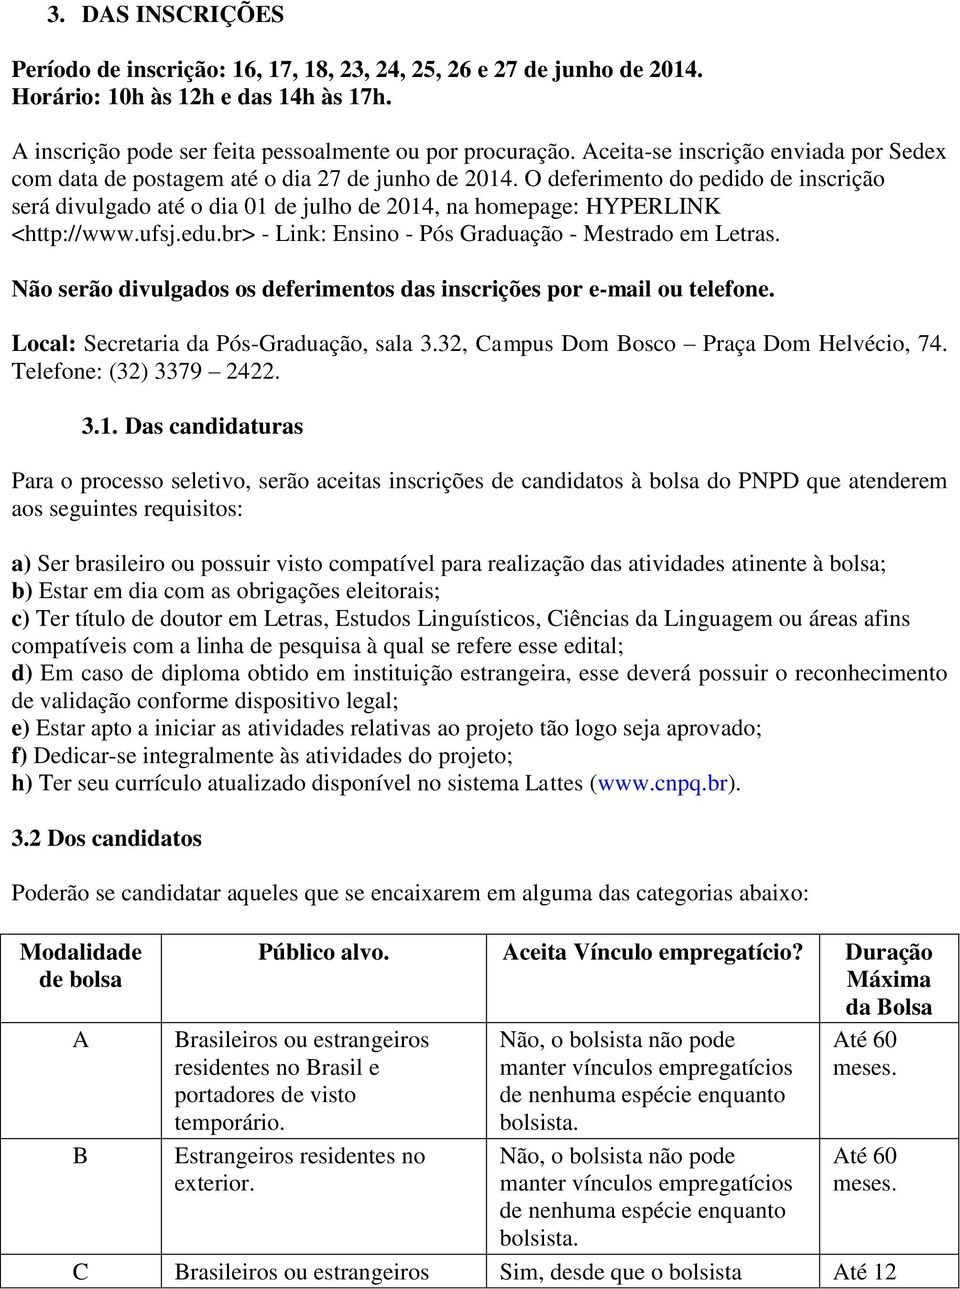 O deferimento do pedido de inscrição será divulgado até o dia 01 de julho de 2014, na homepage: HYPERLINK <http://www.ufsj.edu.br> - Link: Ensino - Pós Graduação - Mestrado em Letras.